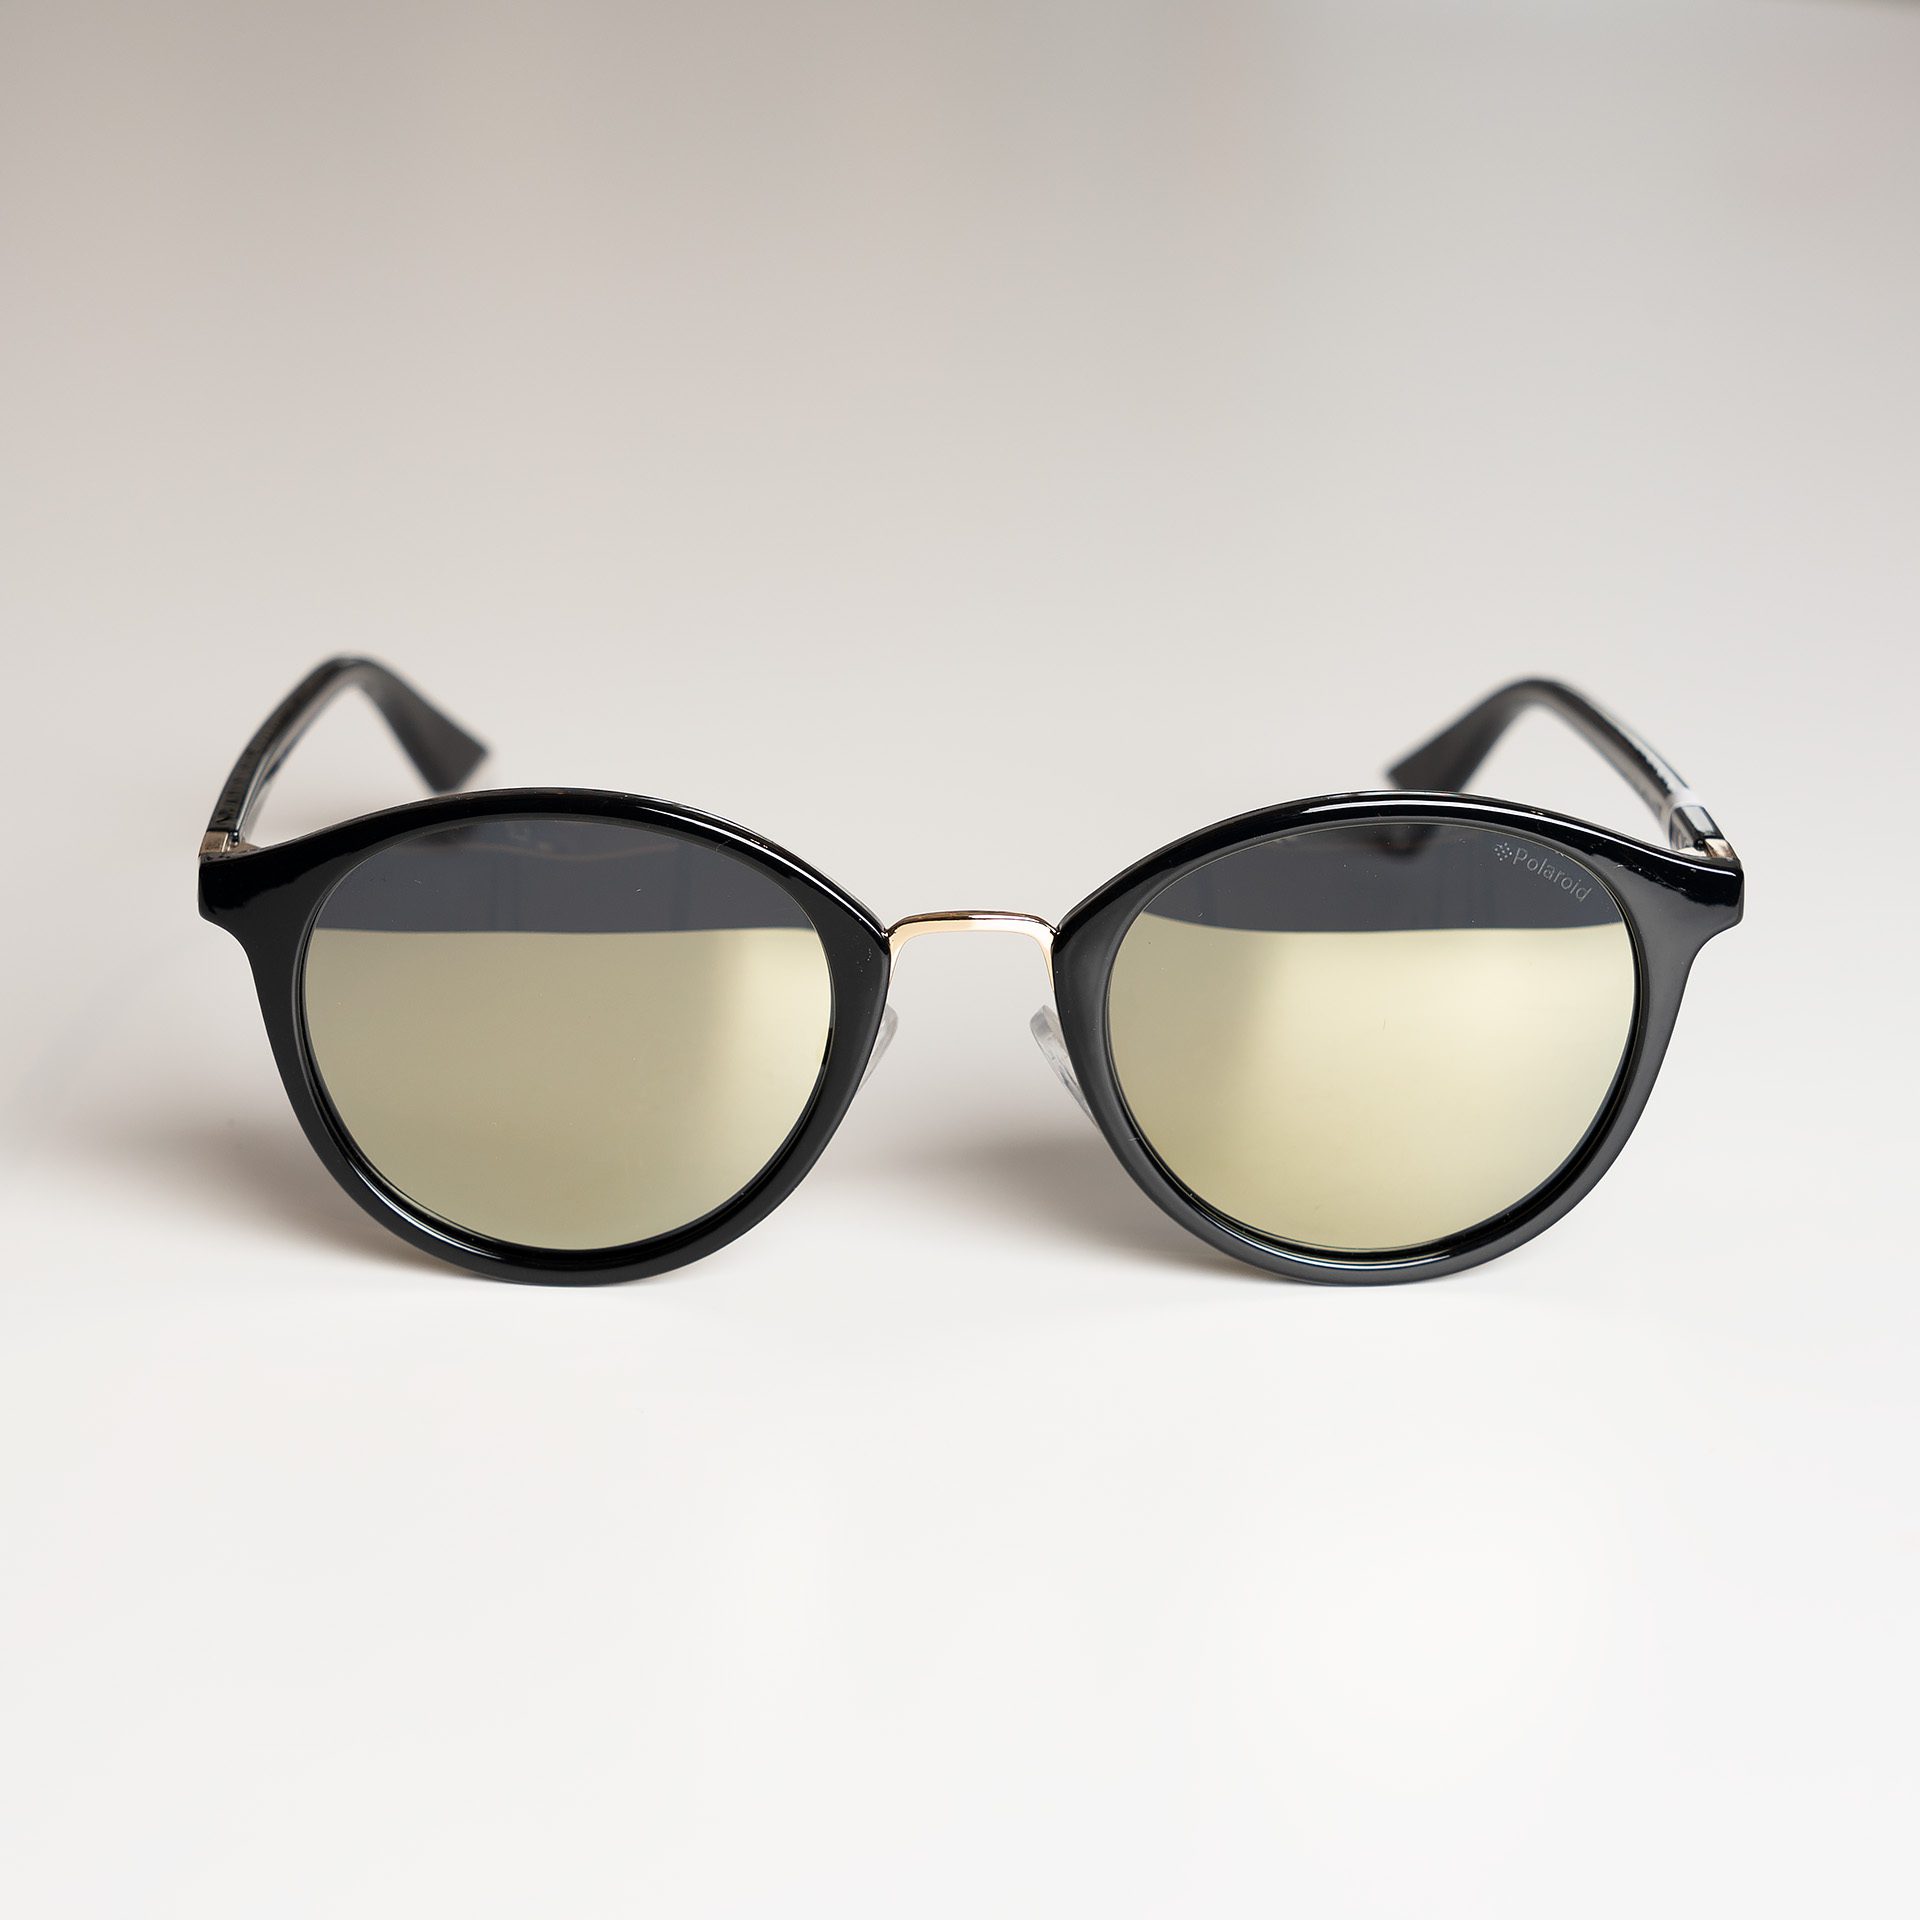 Okulary przeciwsłoneczne Polaroid